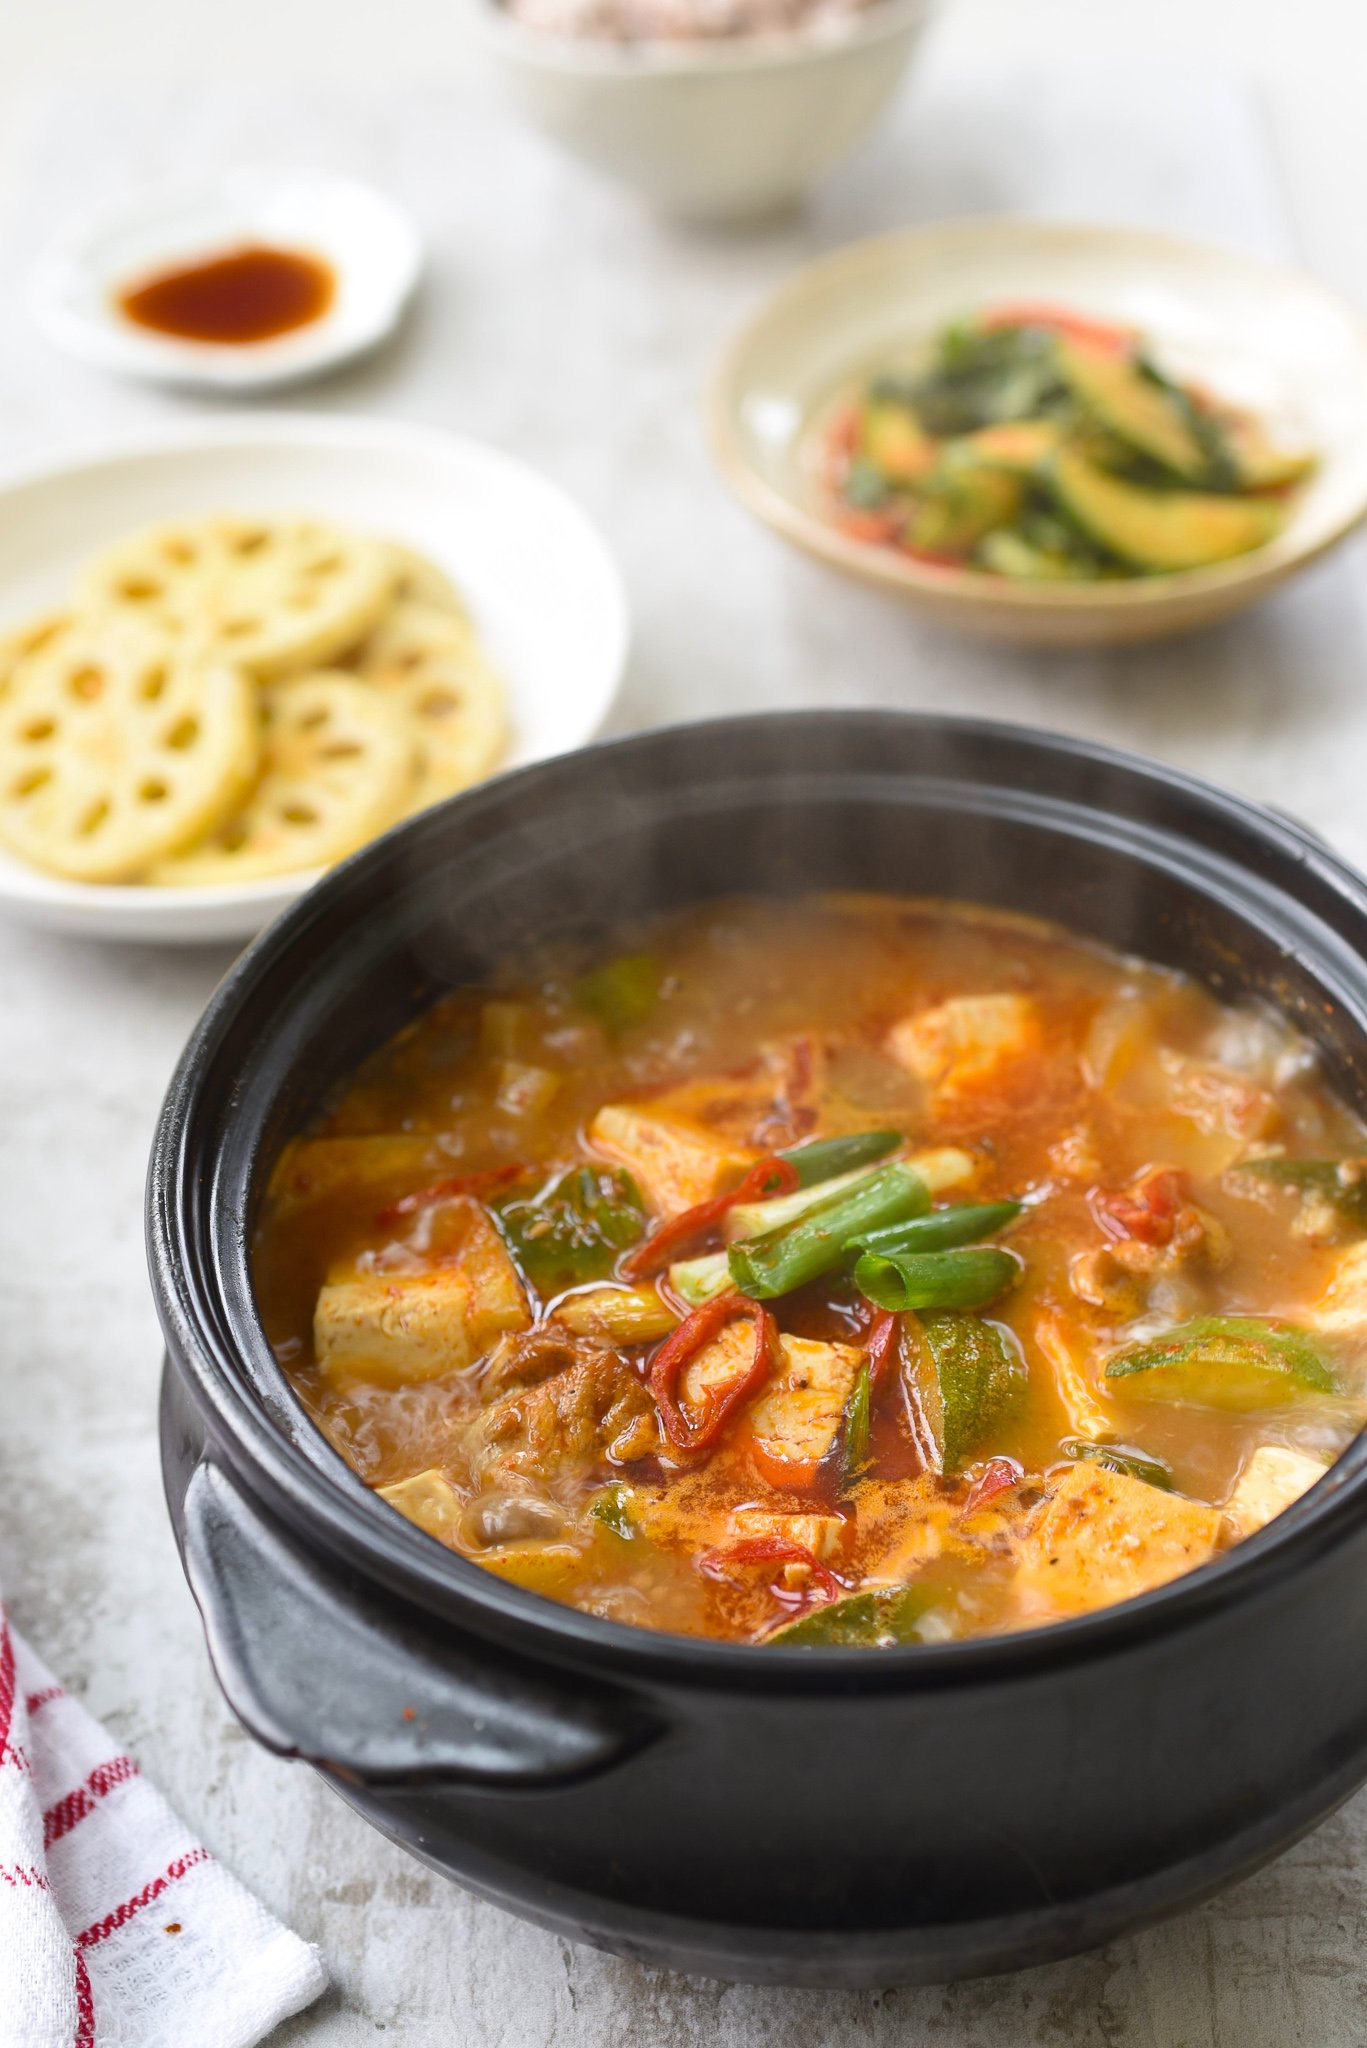 DSC 0686 - Doenjang Jjigae (Korean Soybean Paste Stew)